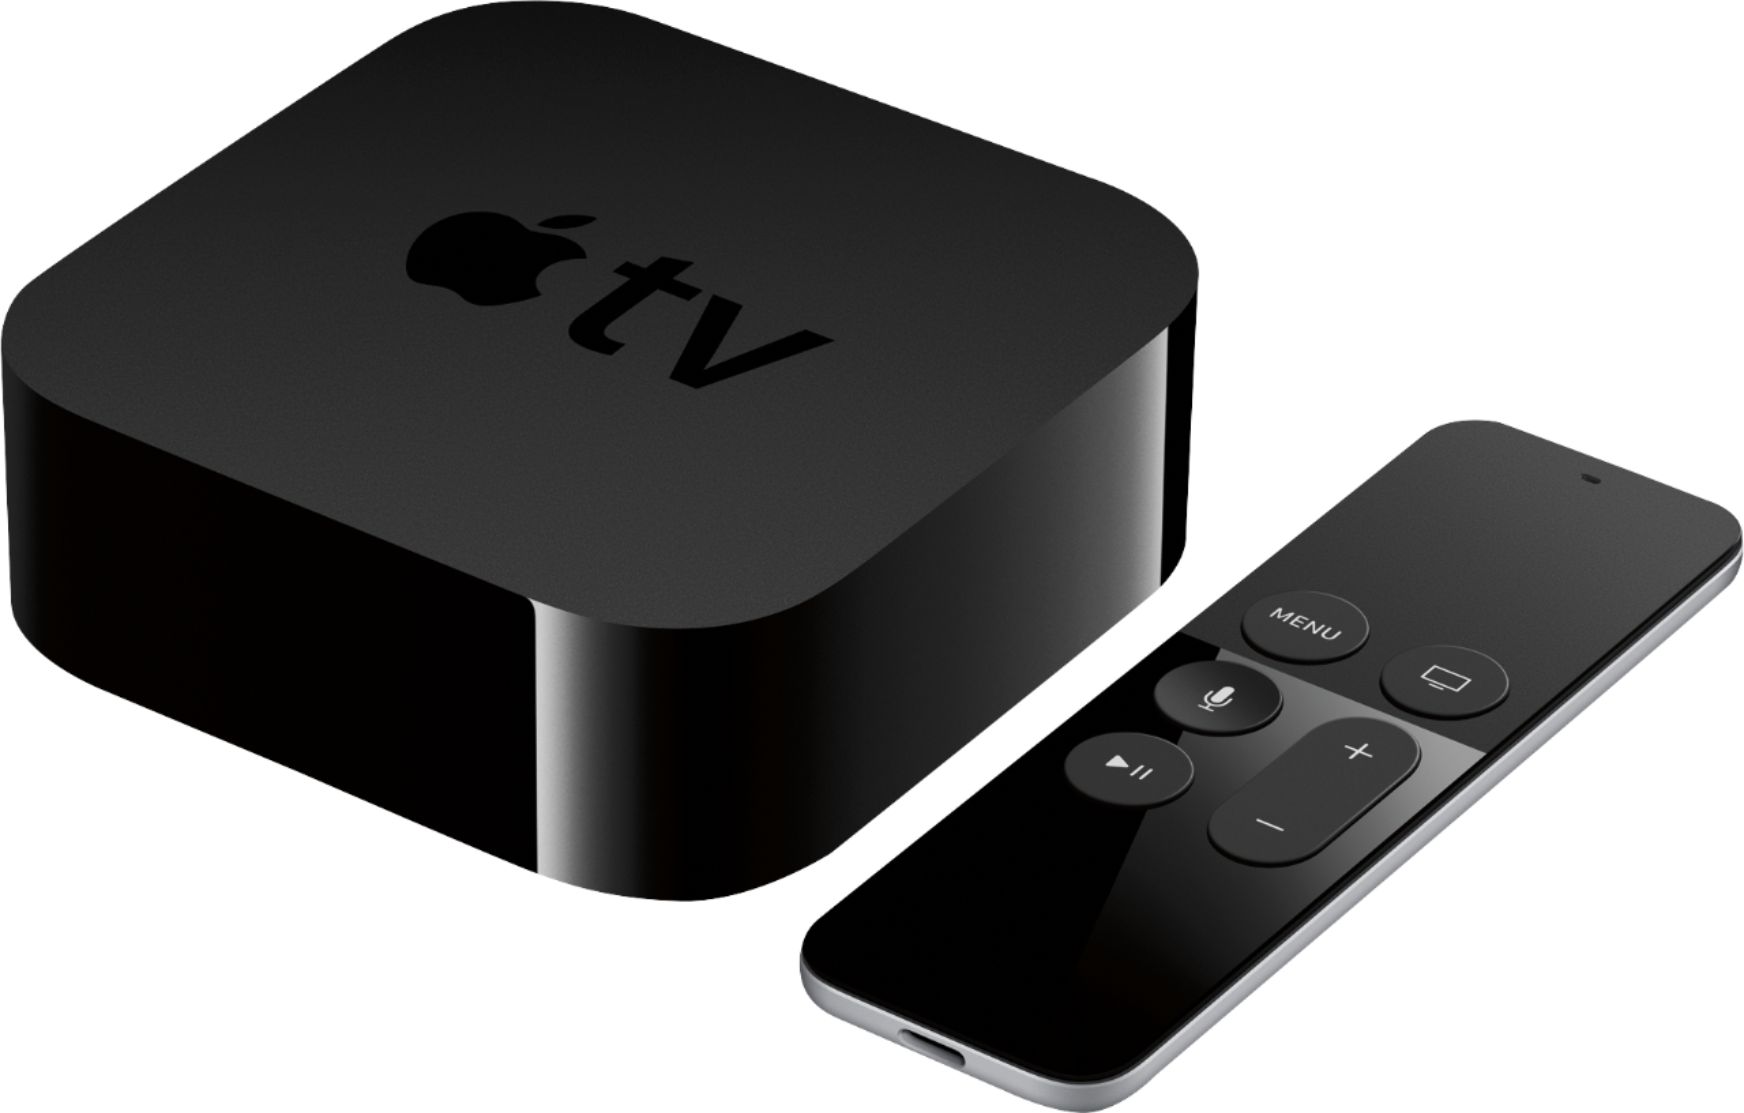 lyse Trække ud Rough sleep Best Buy: Apple TV – 32GB (4th Generation) Black MGY52LL/A